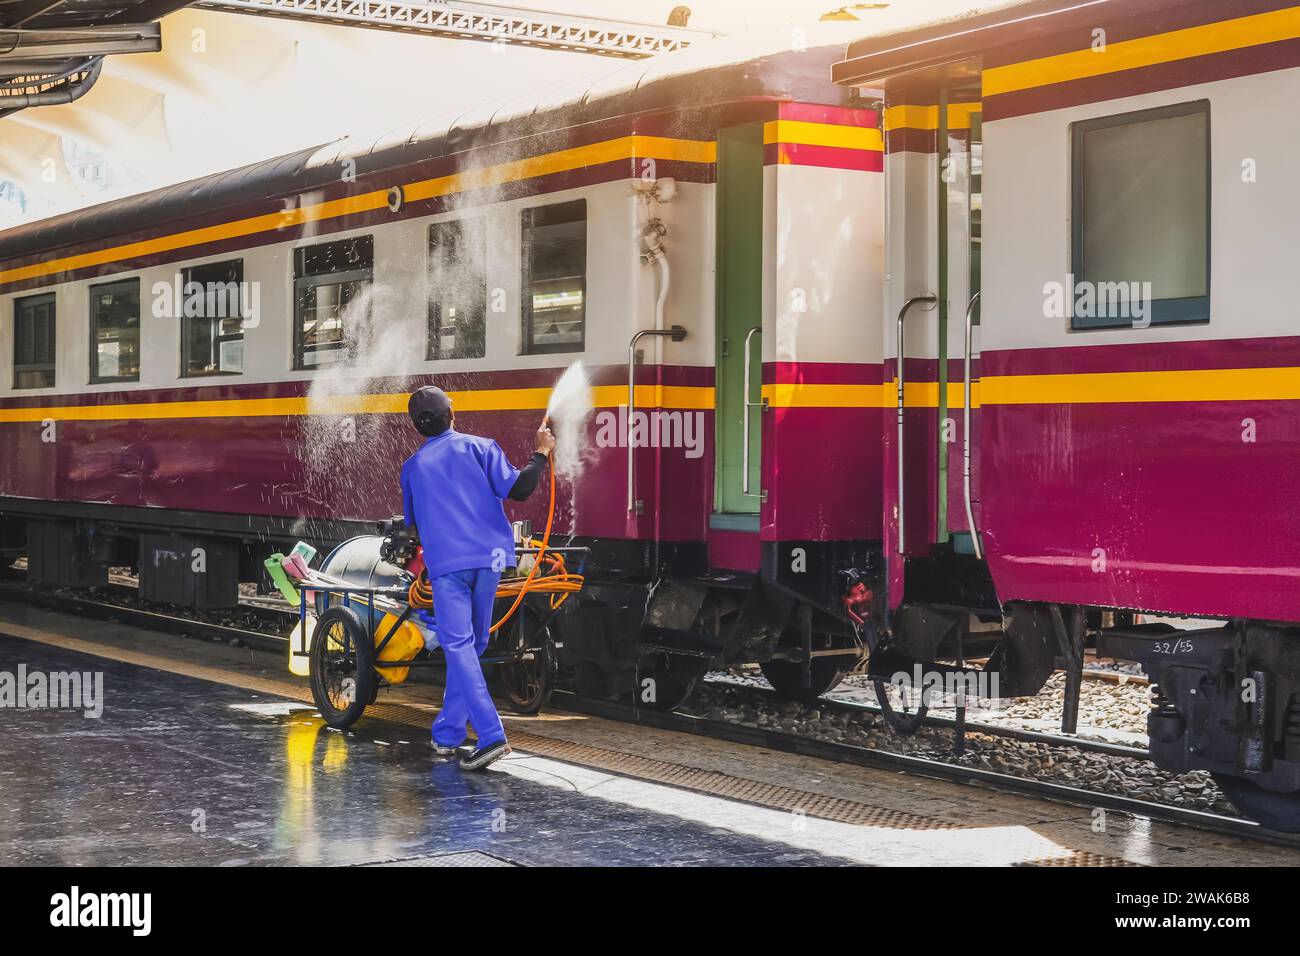 L'employé lave les voitures de voyageurs, le travailleur lave les voitures de train à la gare. Banque D'Images